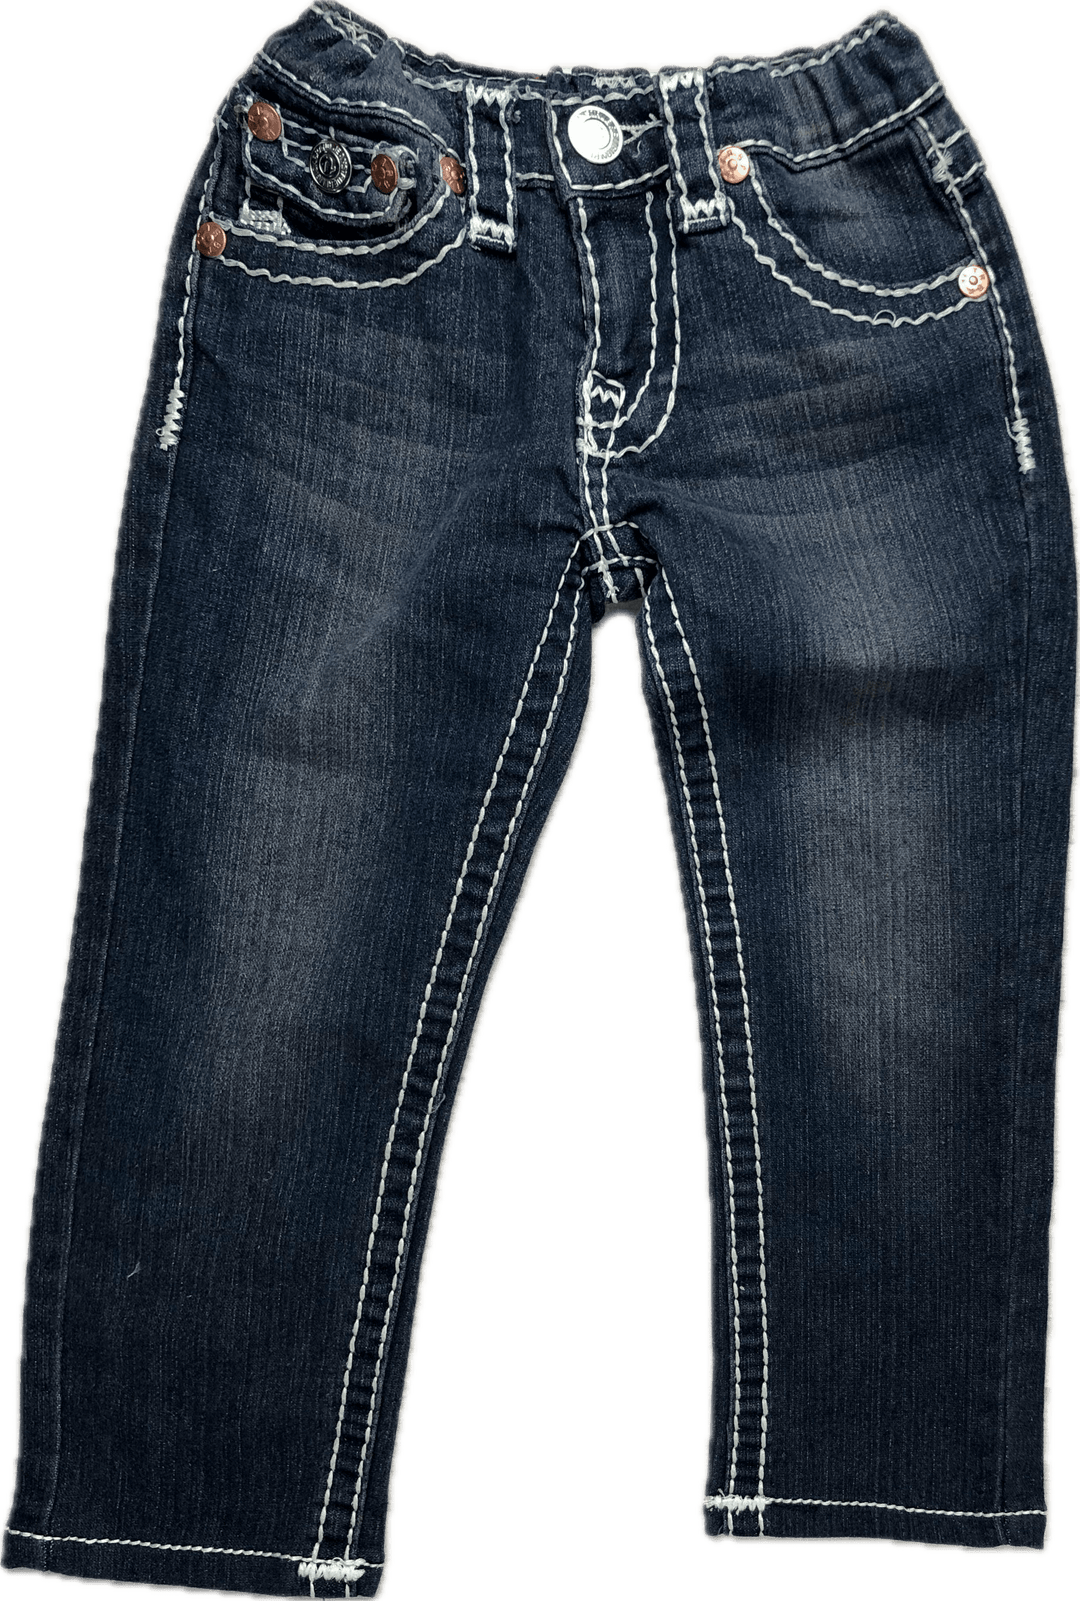 True Religion 'Joey Super T' Jeans - Size 3/4 - Jean Pool